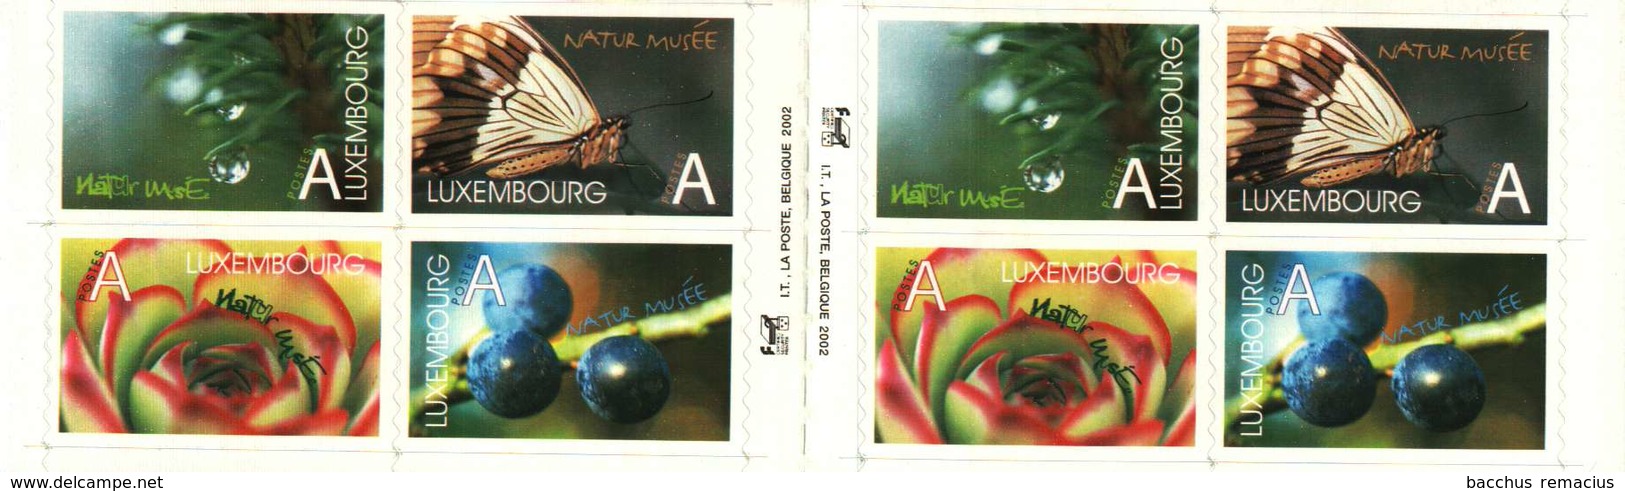 Luxembourg-Grund Carnet De 8 Timbres "A"  Autocollants  Musée D'Histoire Naturelle Naturmuseum 2002 - Postzegelboekjes